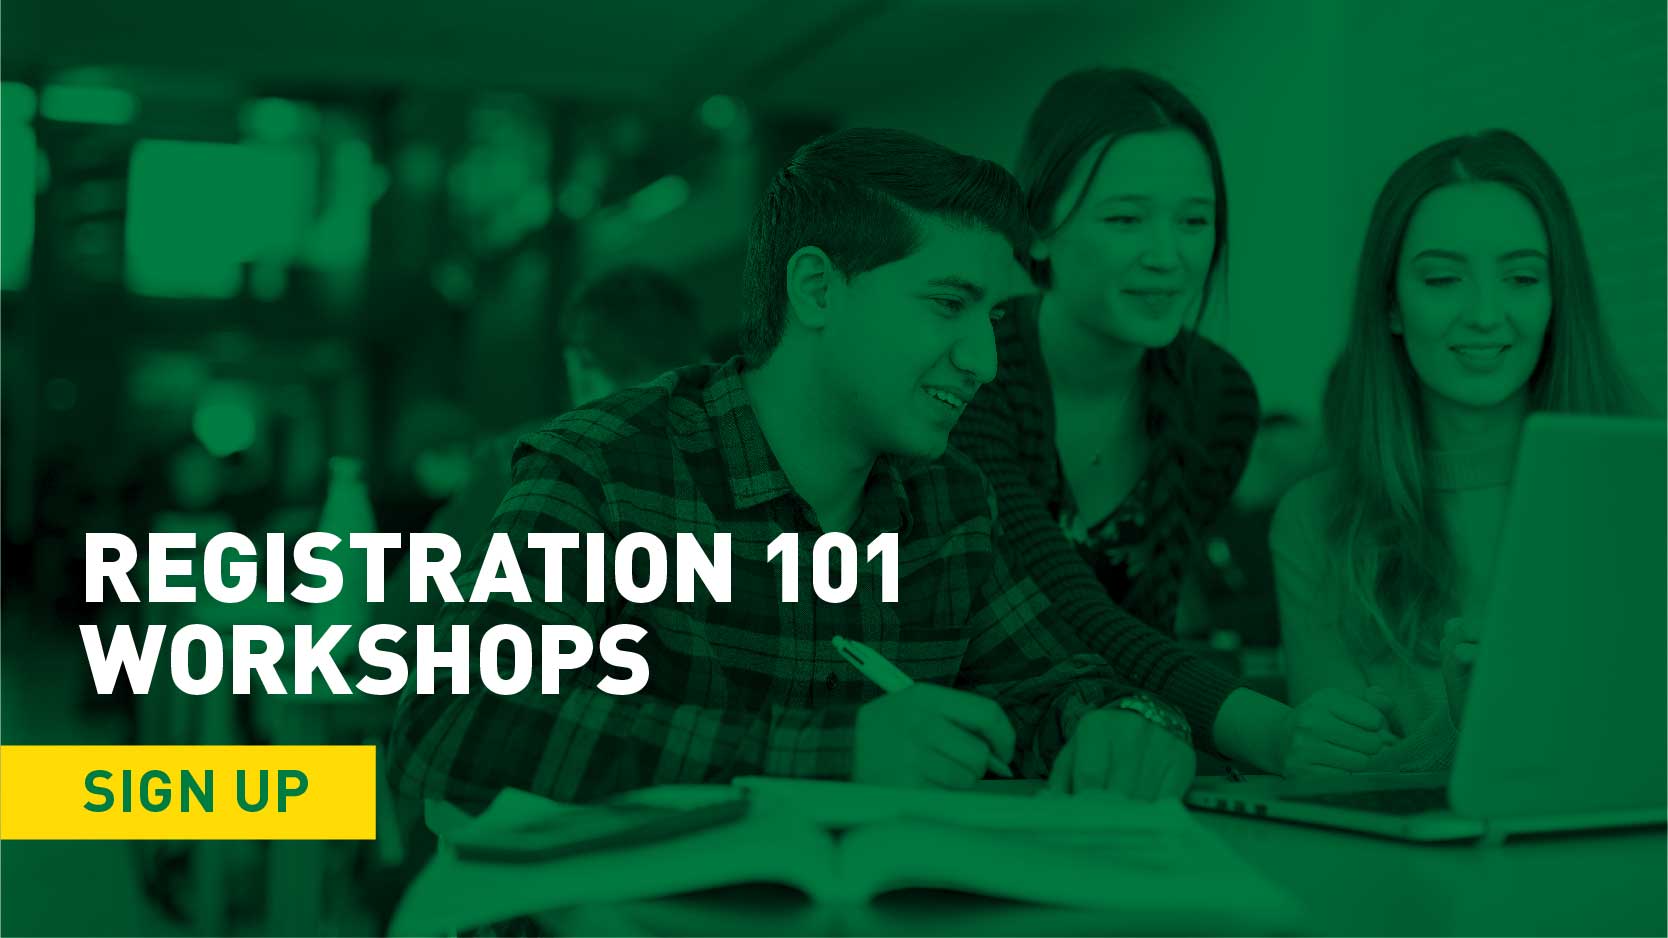 Registration 101 Workshops | Sign Up